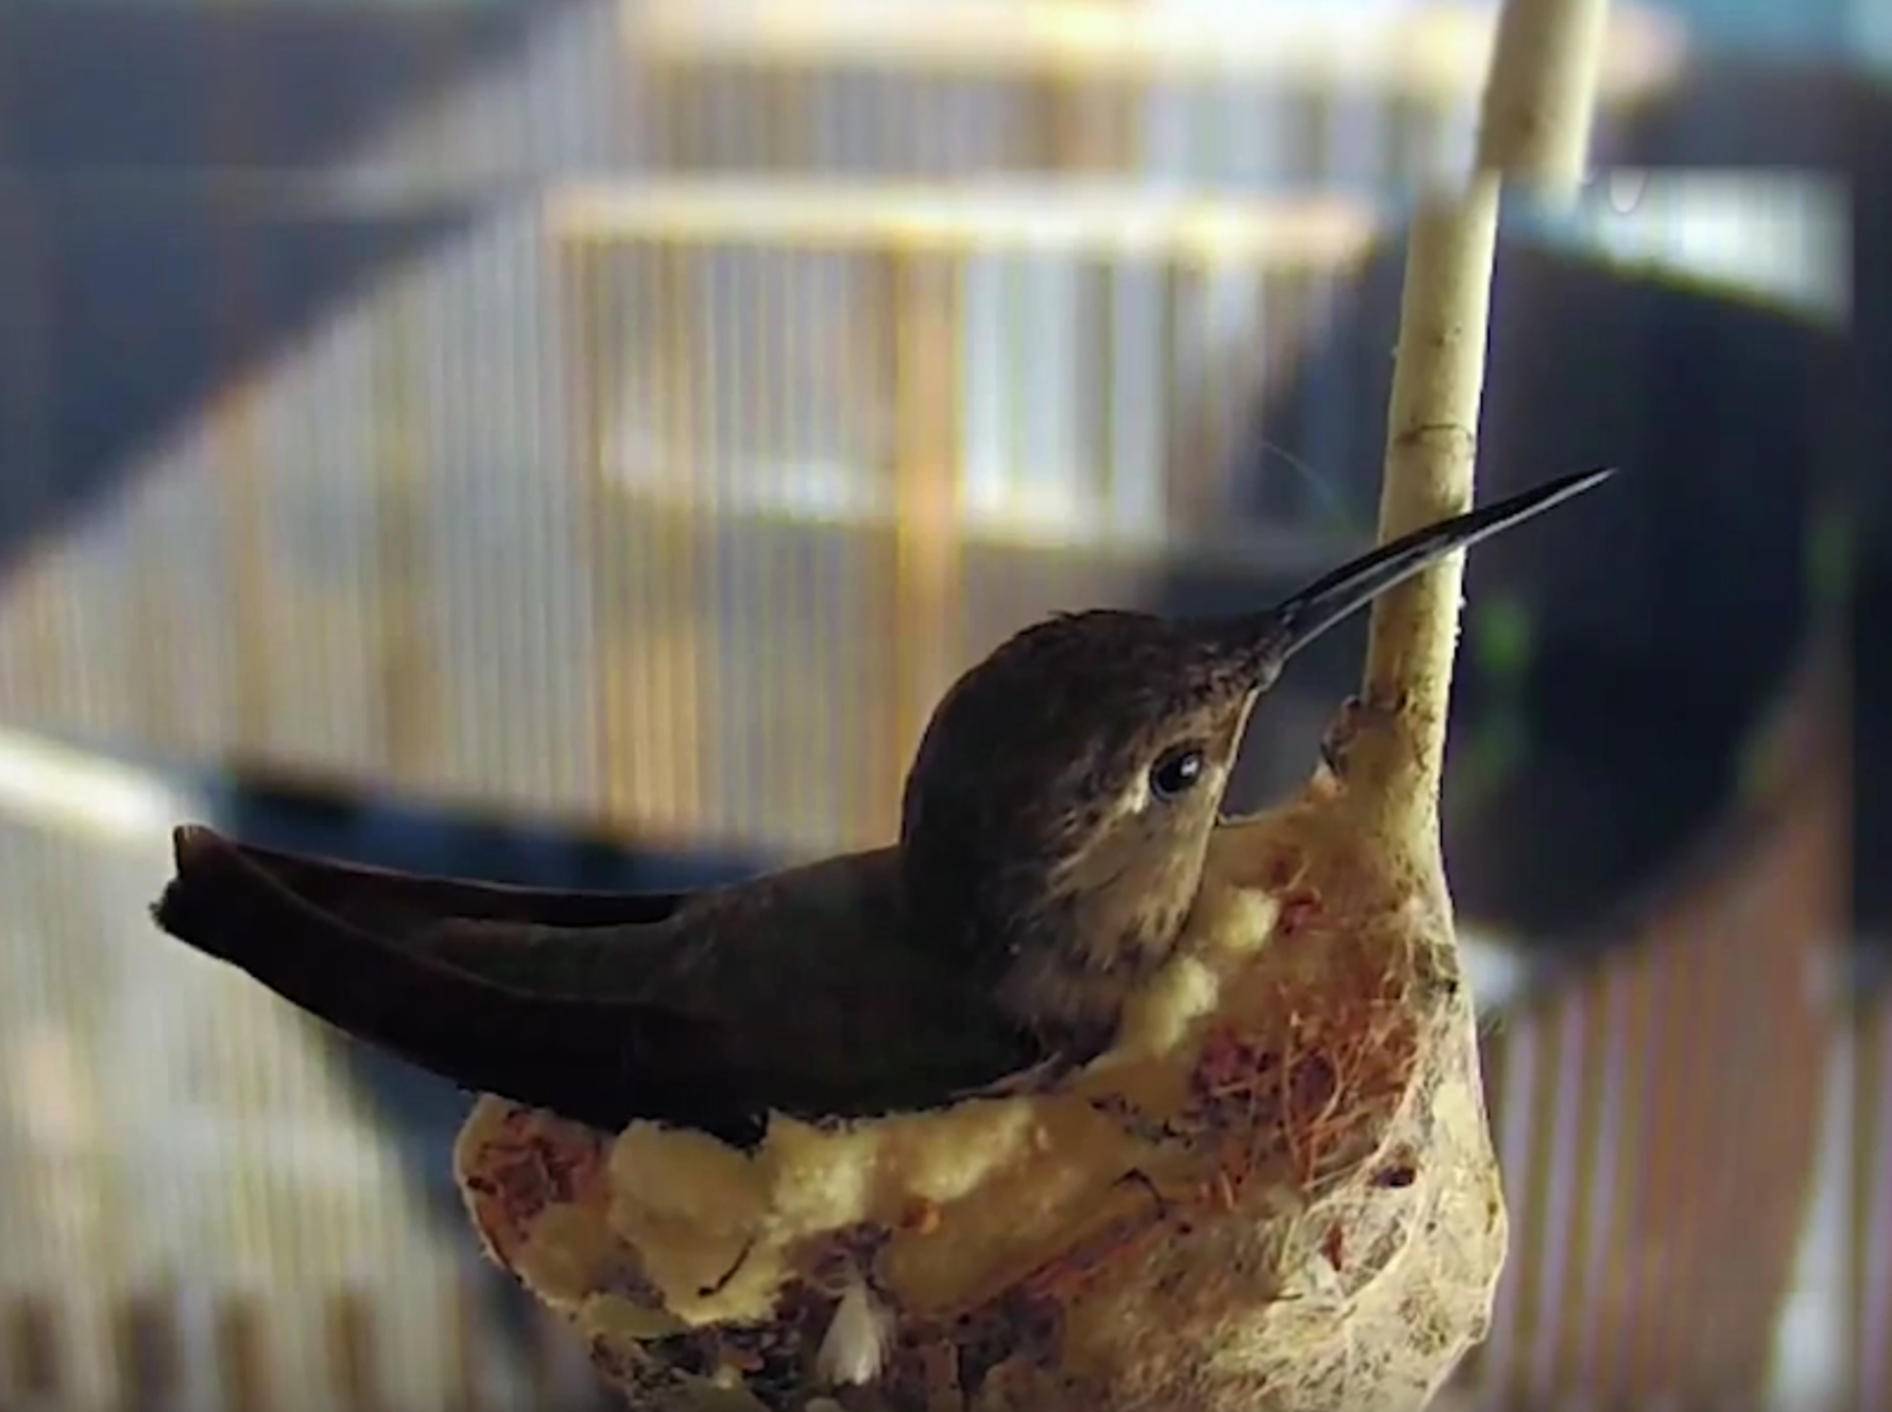 Kolibri sucht Rampenlicht: Nestbau vor Kamera – Bild: YouTube / The University of Arizona